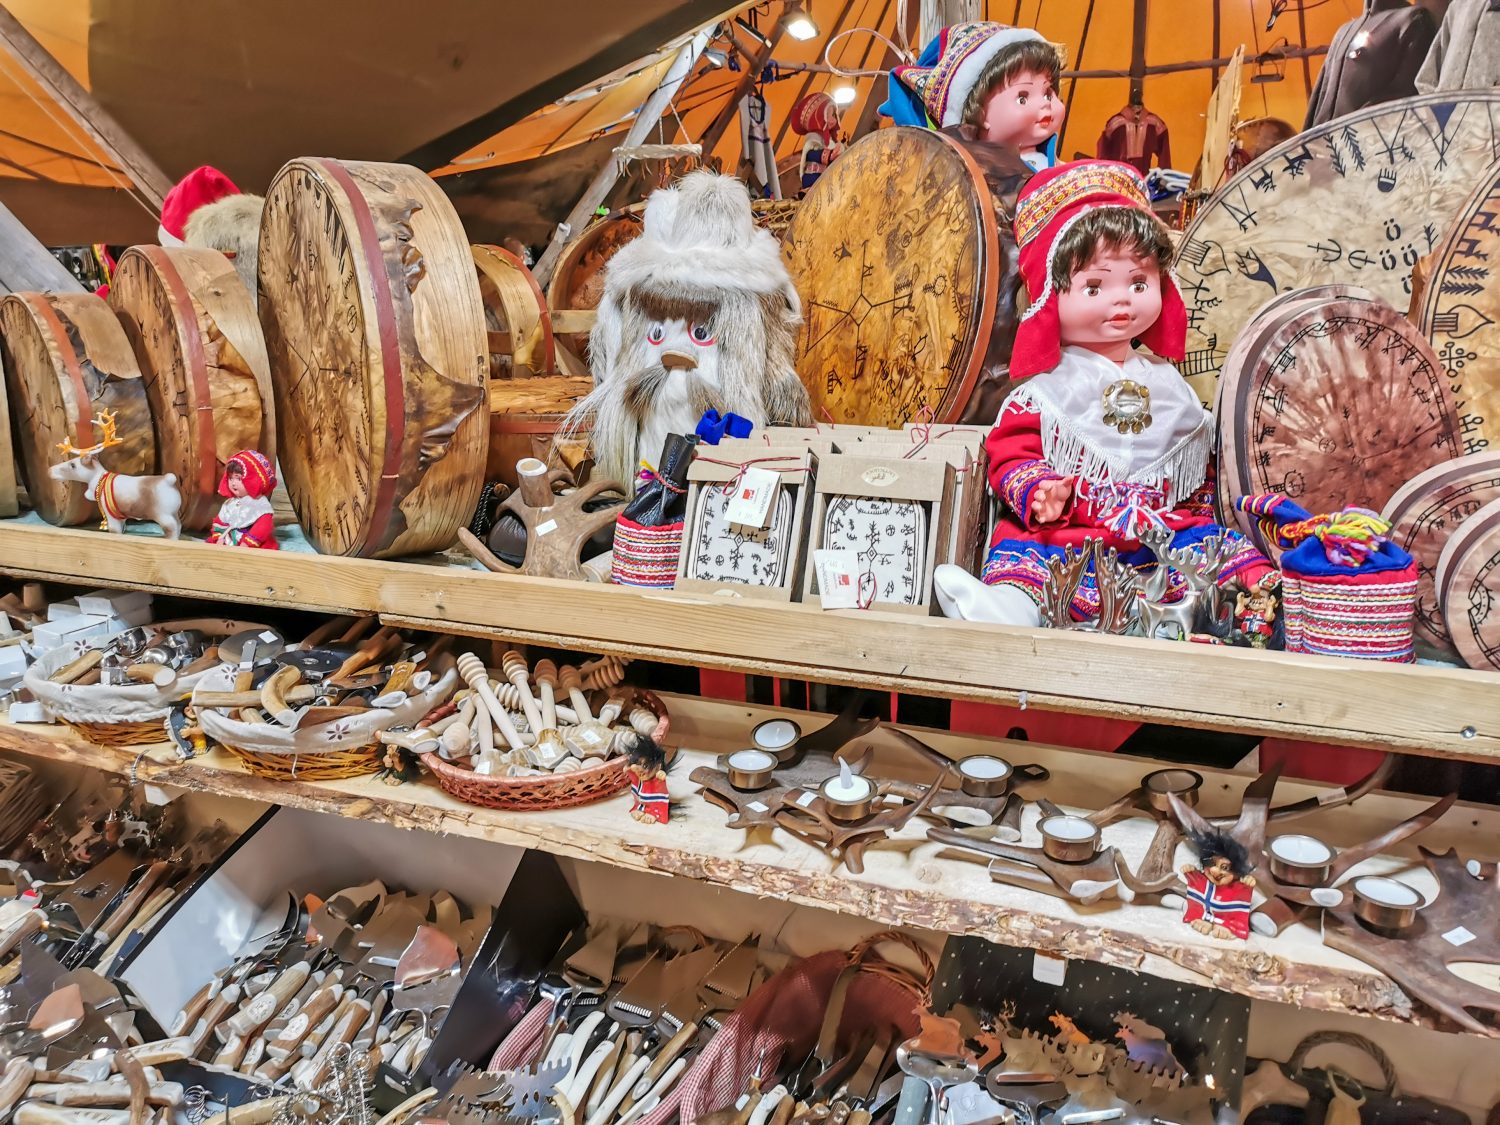 Il negozio di artigianato del popolo Sami vicino alla strada nel nord della Norvegia.  Estate fredda nel Finnmark.